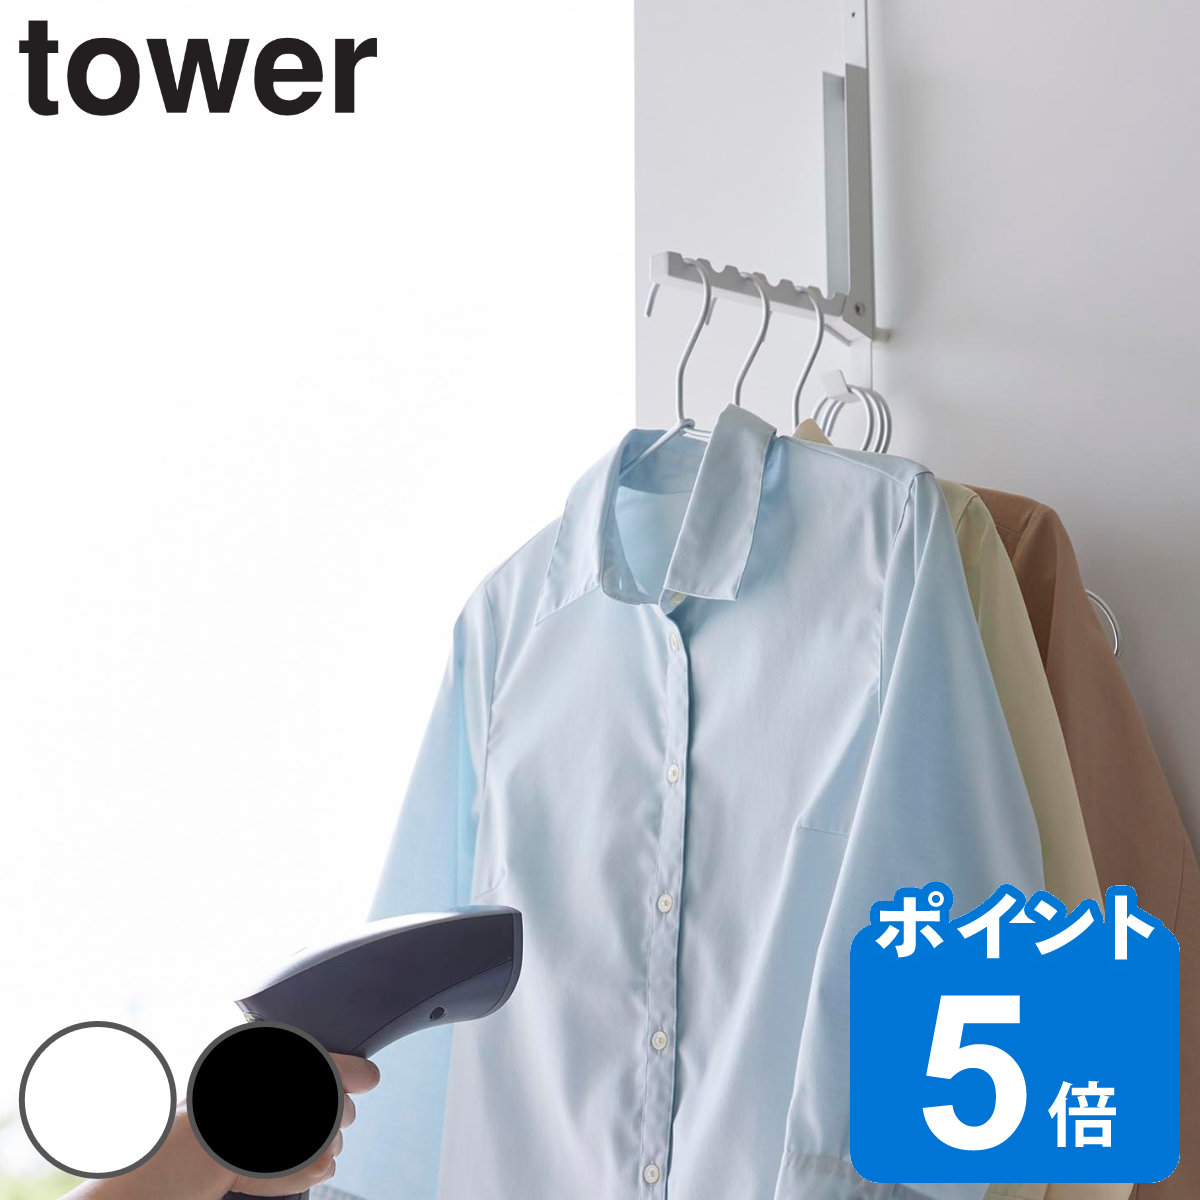 山崎実業 tower 使わない時は折り畳める衣類スチーマー用ドアハンガー タワー